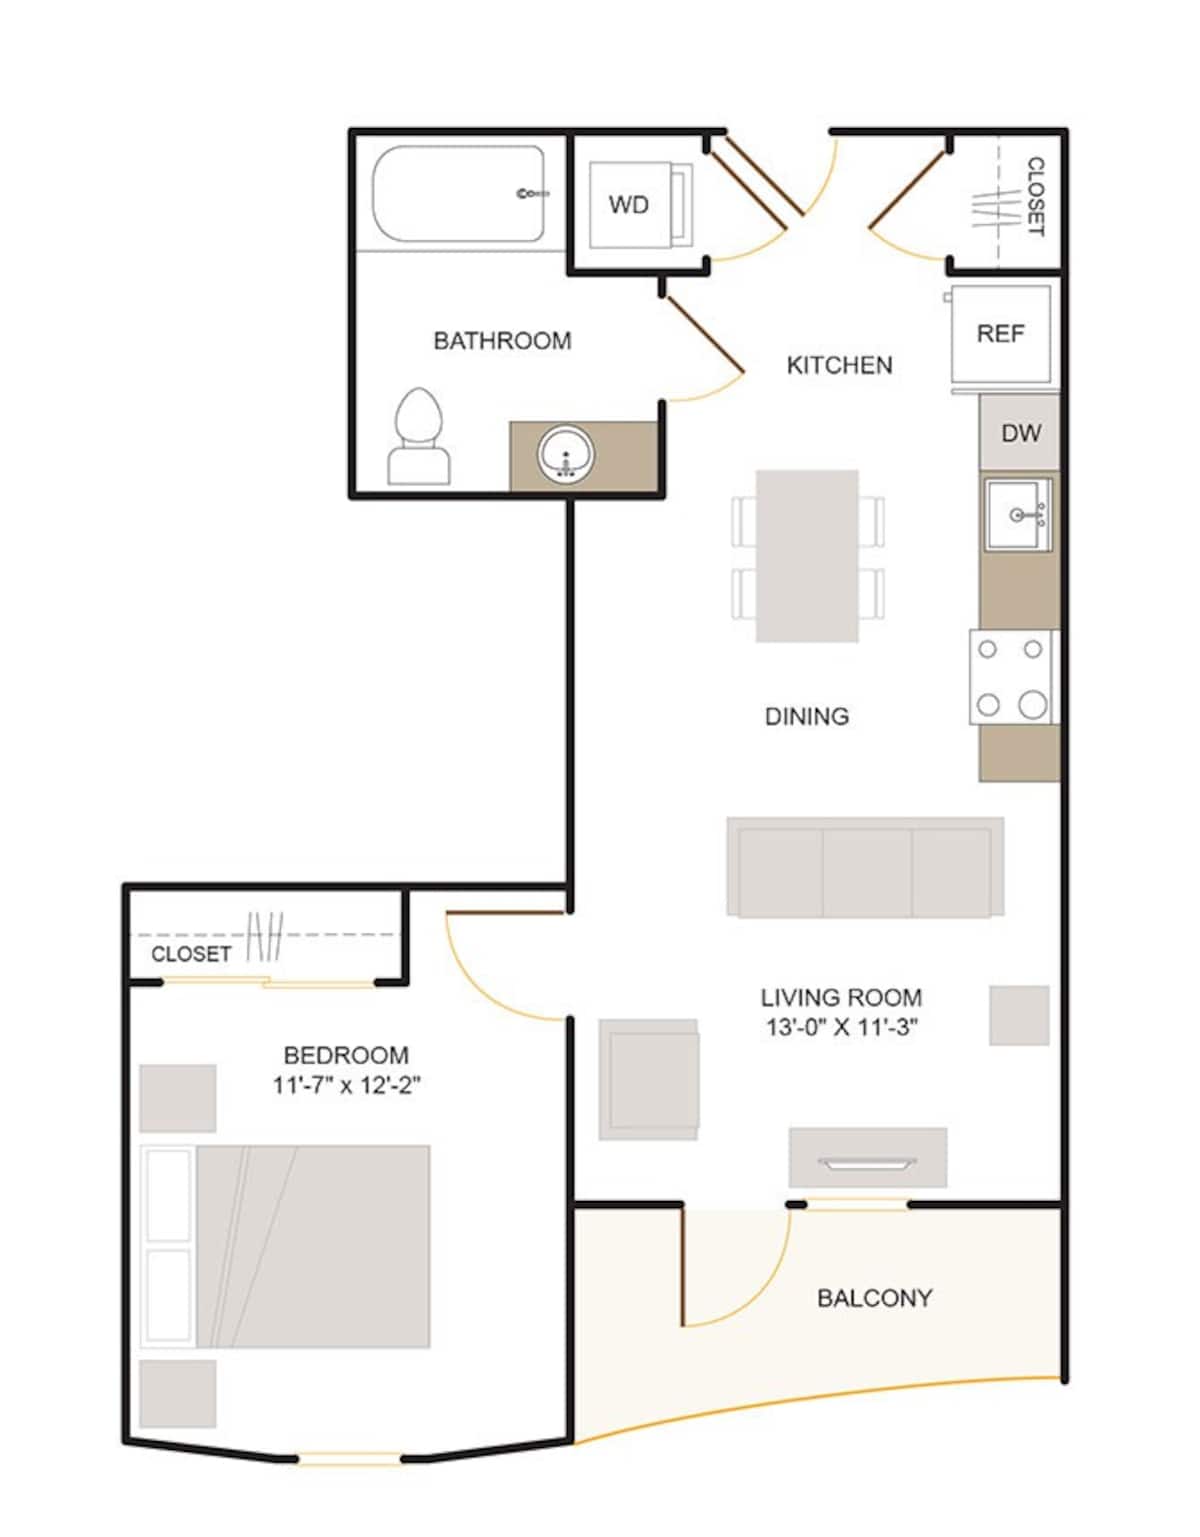 Floorplan diagram for B1 (1x1), showing 1 bedroom